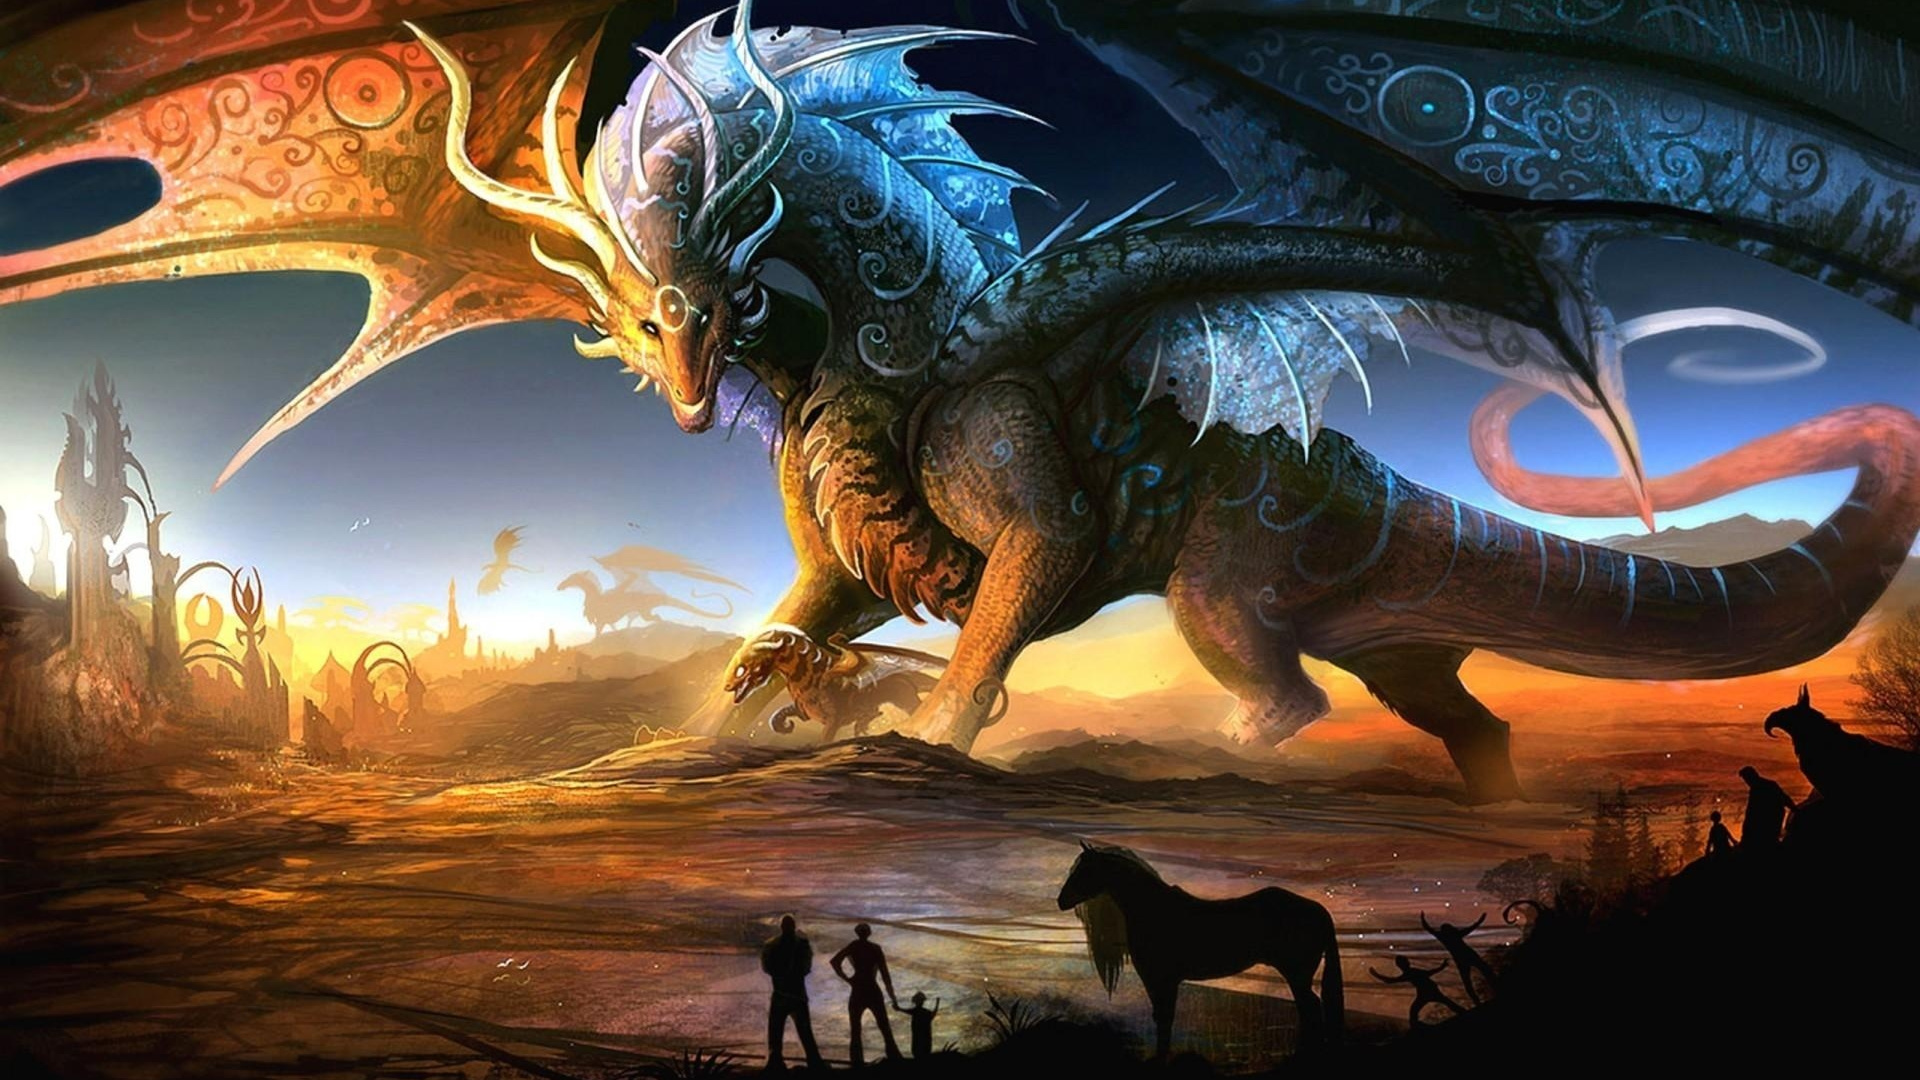 龙, 传说中的生物, 幻想, 神秘的生物, 灭绝 壁纸 1920x1080 允许